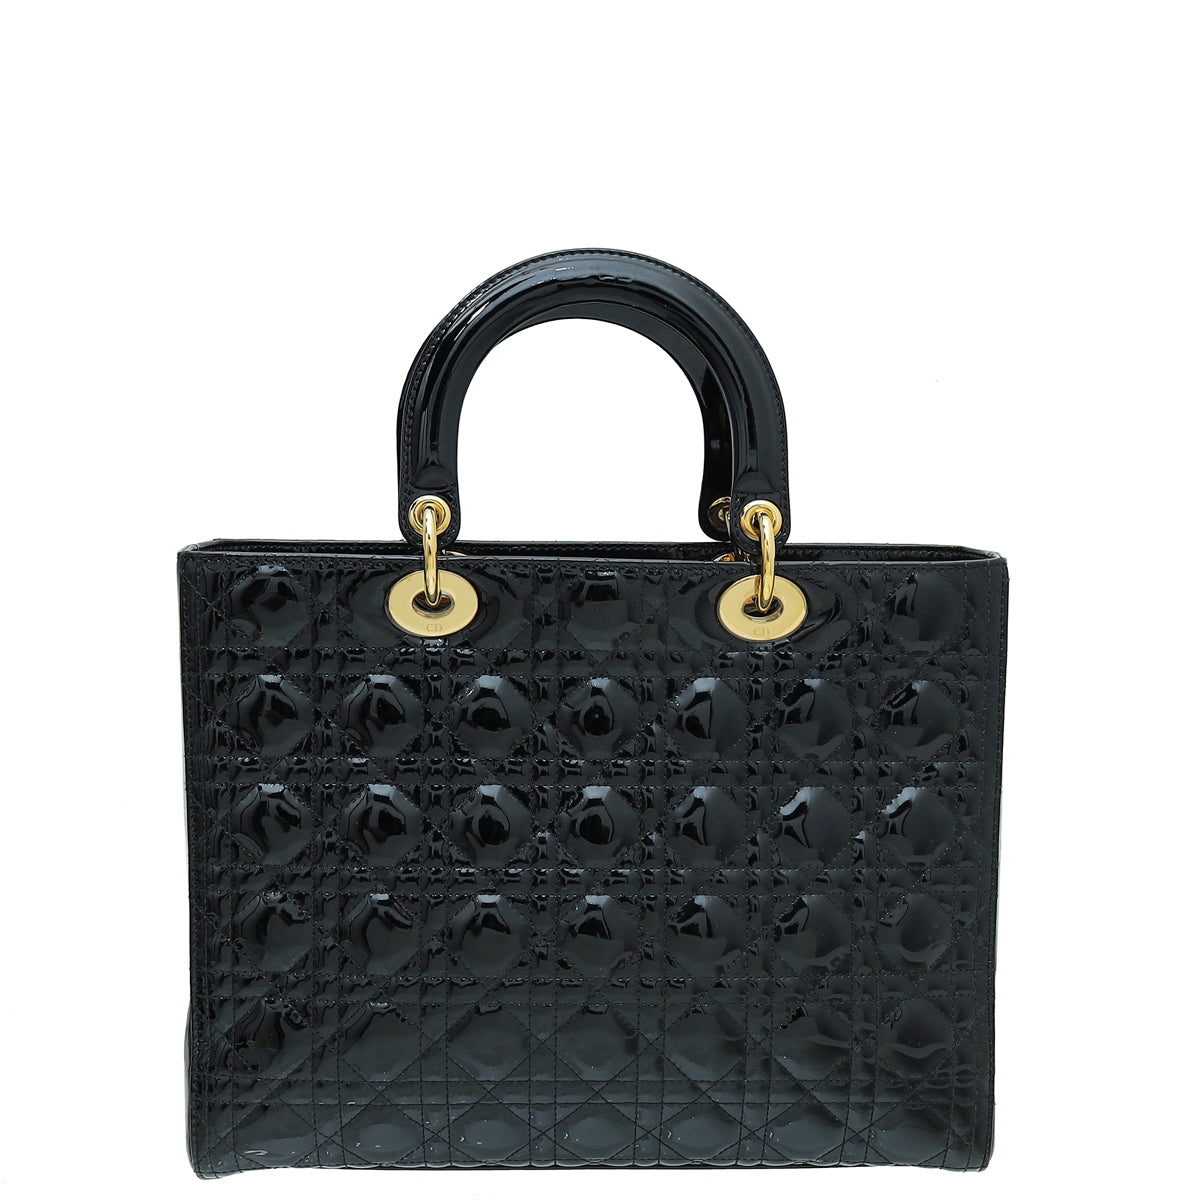 Christian Dior Black Lady Dior Bag